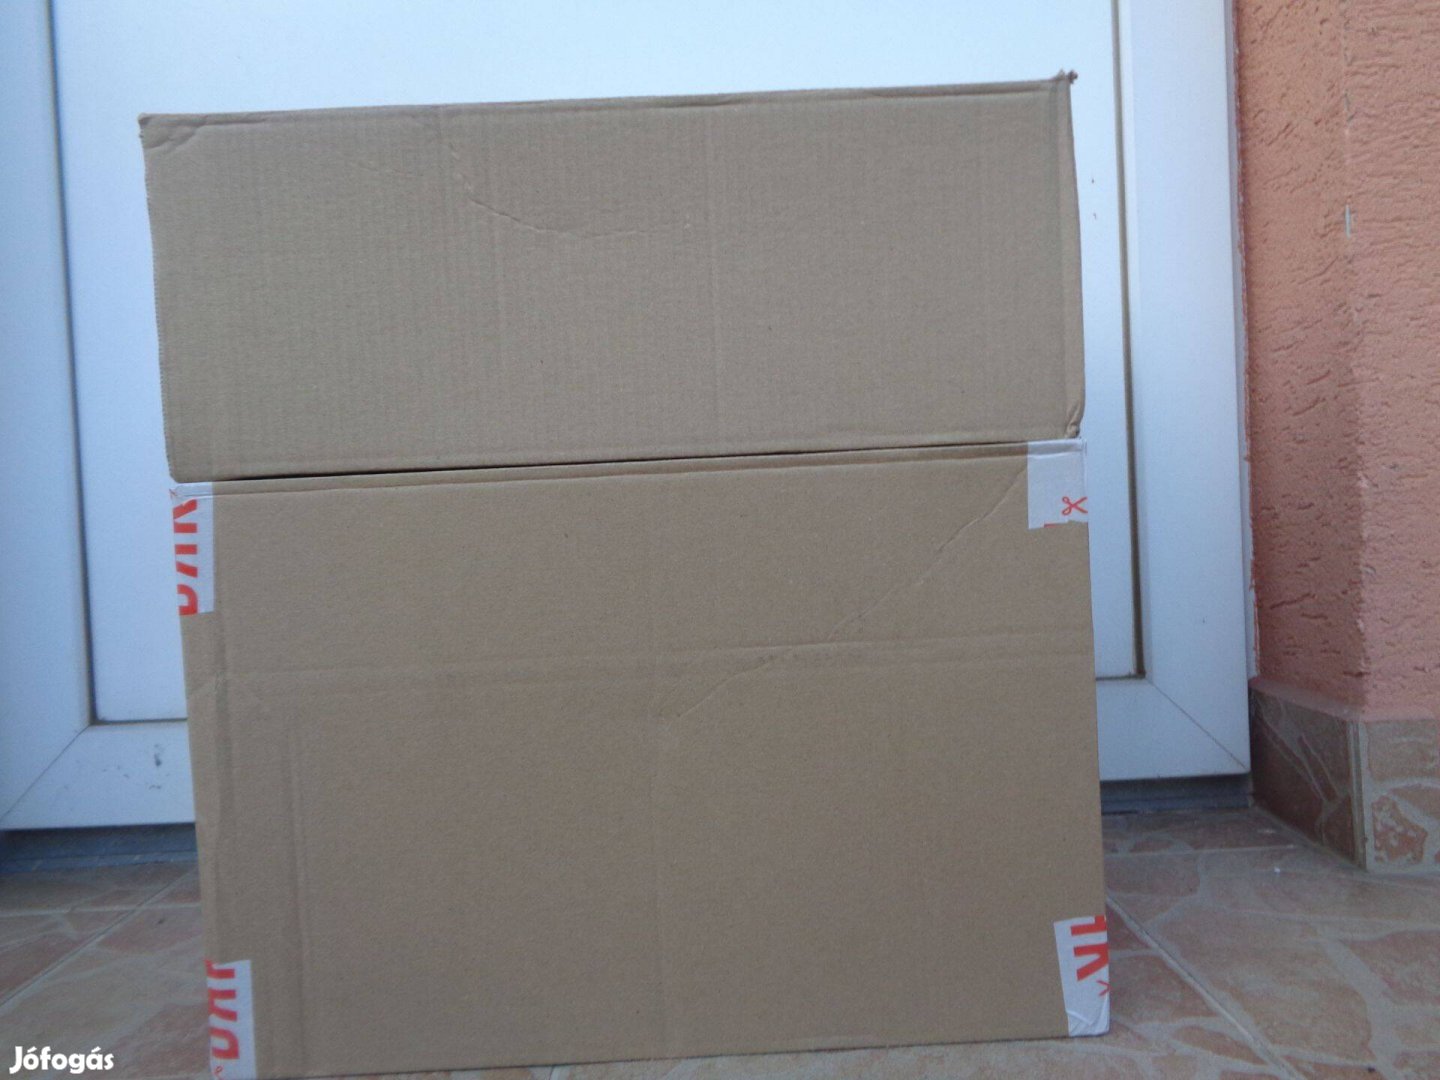 40x30x15,5 és 40x30x27 cm-es karton hullámpapír dobozok, több db